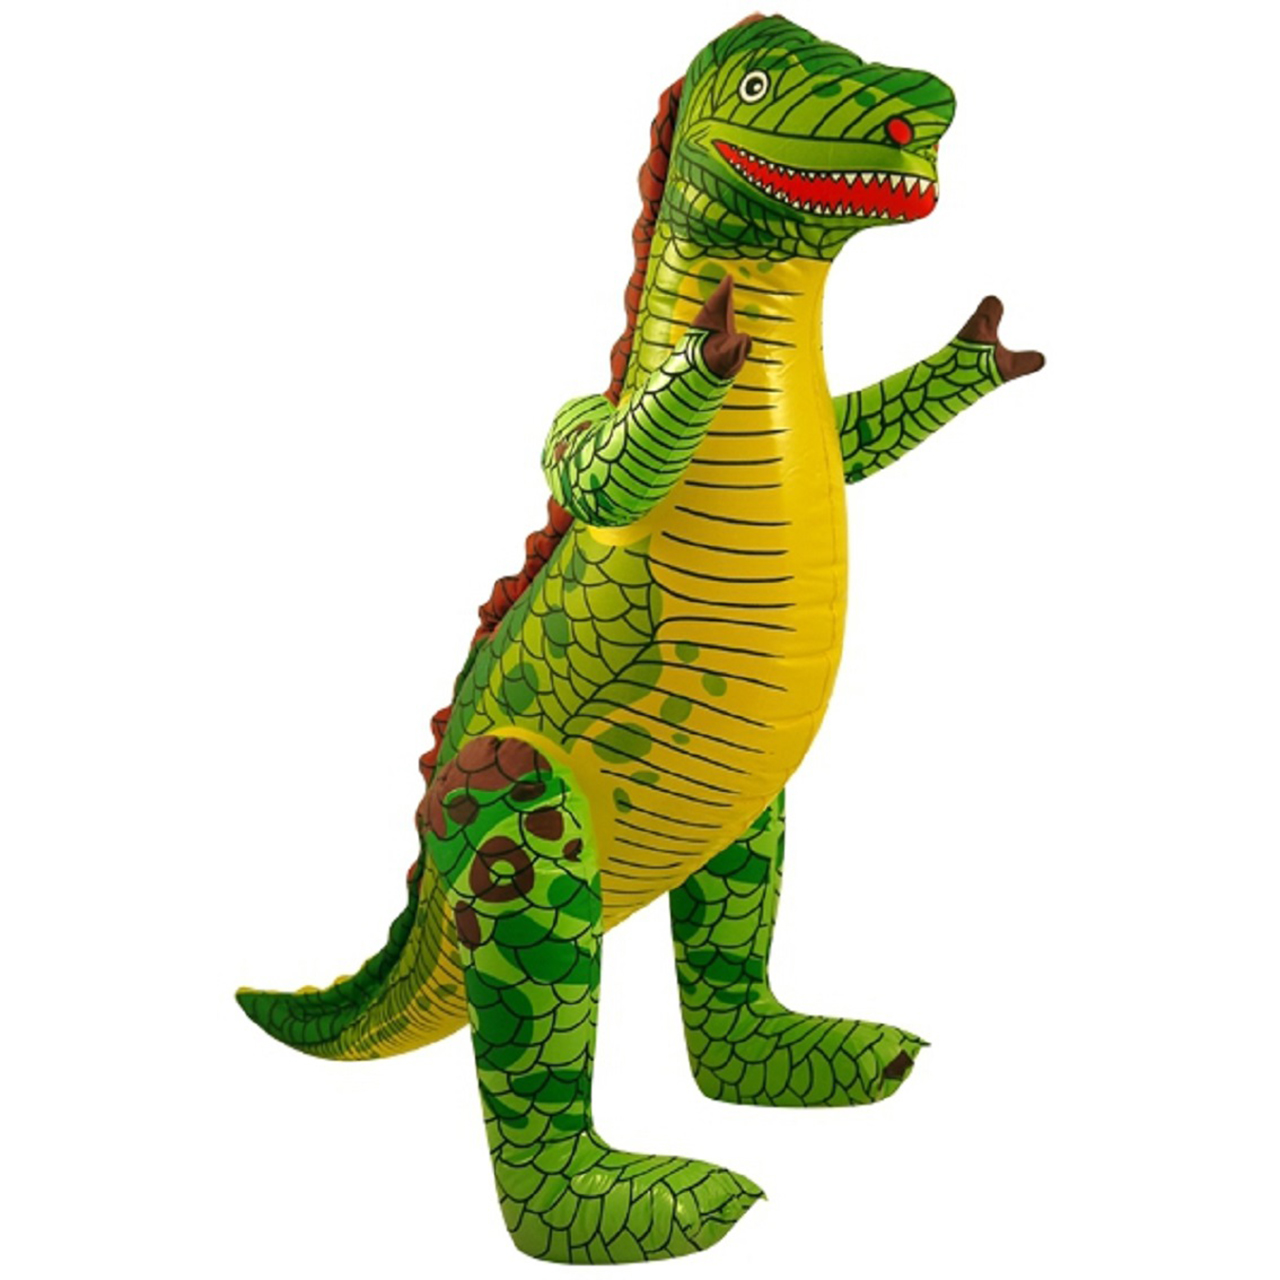 aufblasbares T-Rex Dinosaurier-Spielzeug für Pool Party Dekorationen Dinosaurier Geburtstagsfeiergeschenk für Kinder und Erwachsen JOYIN 76,2 cm Dinosaurier aufblasbar 